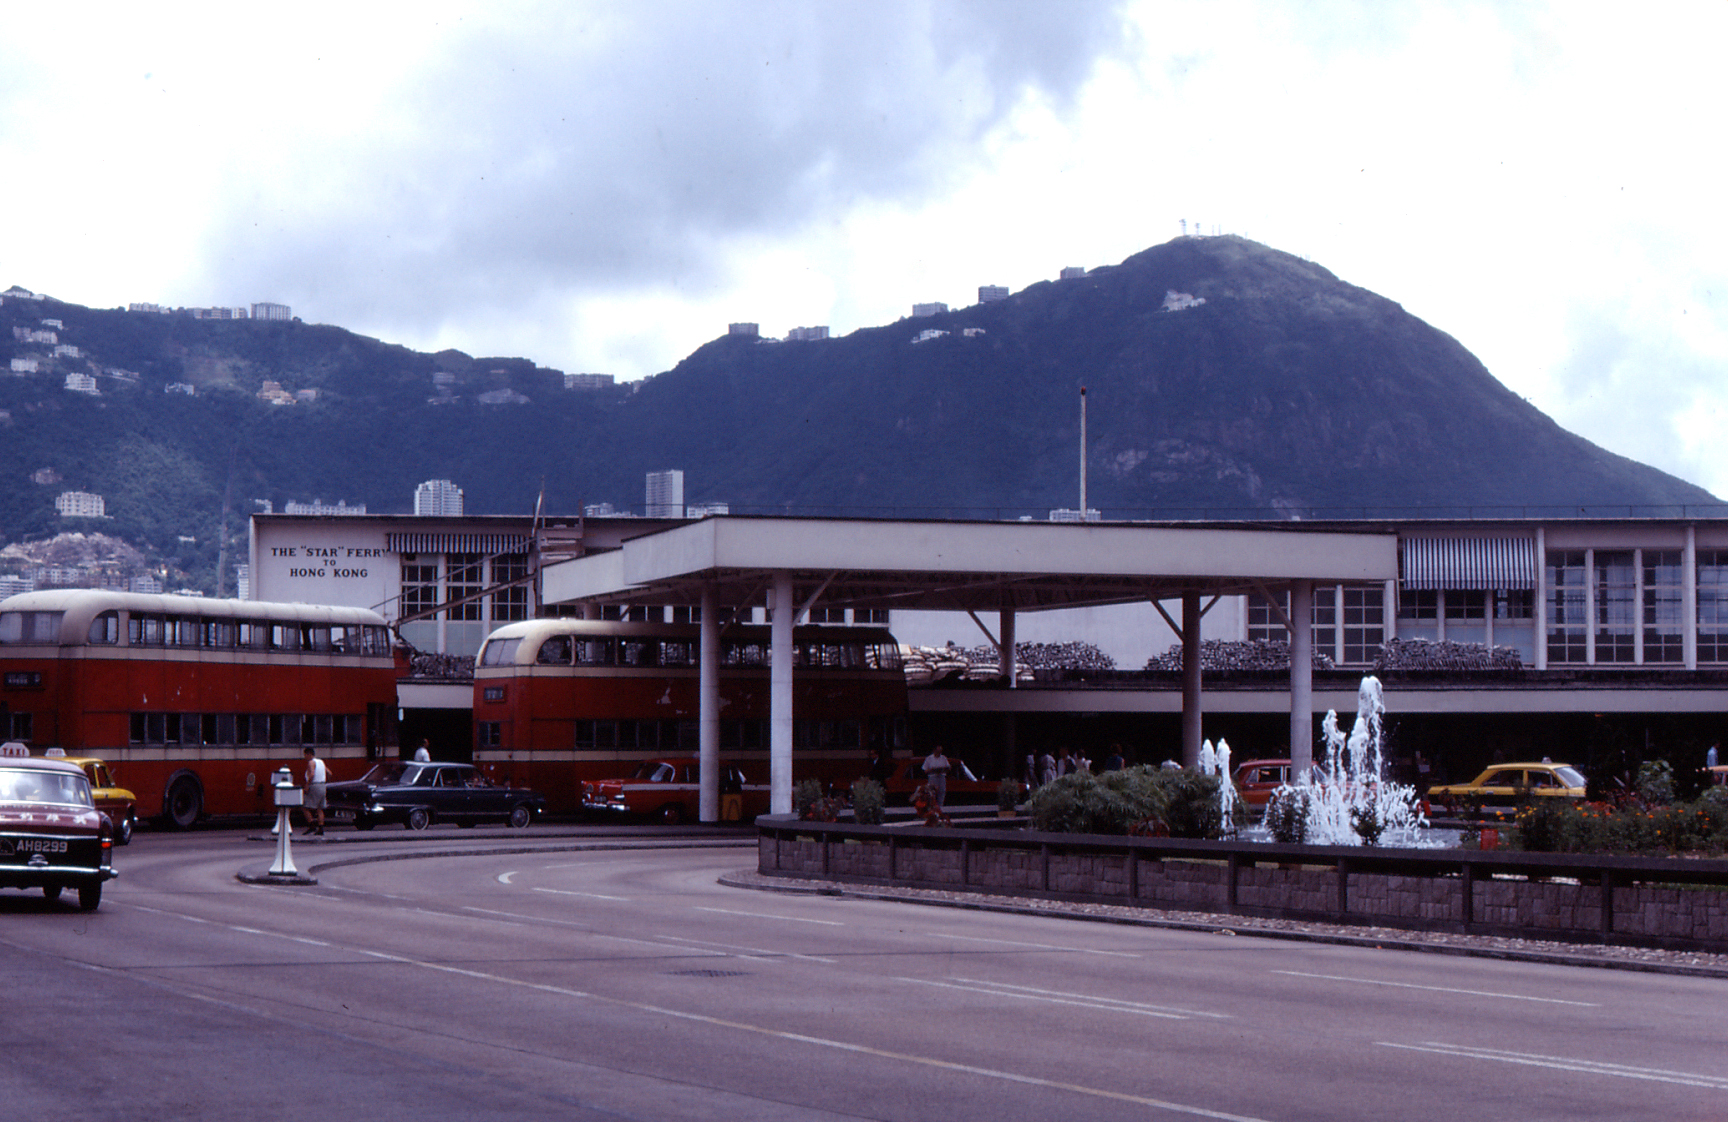 Hong Kong bus station